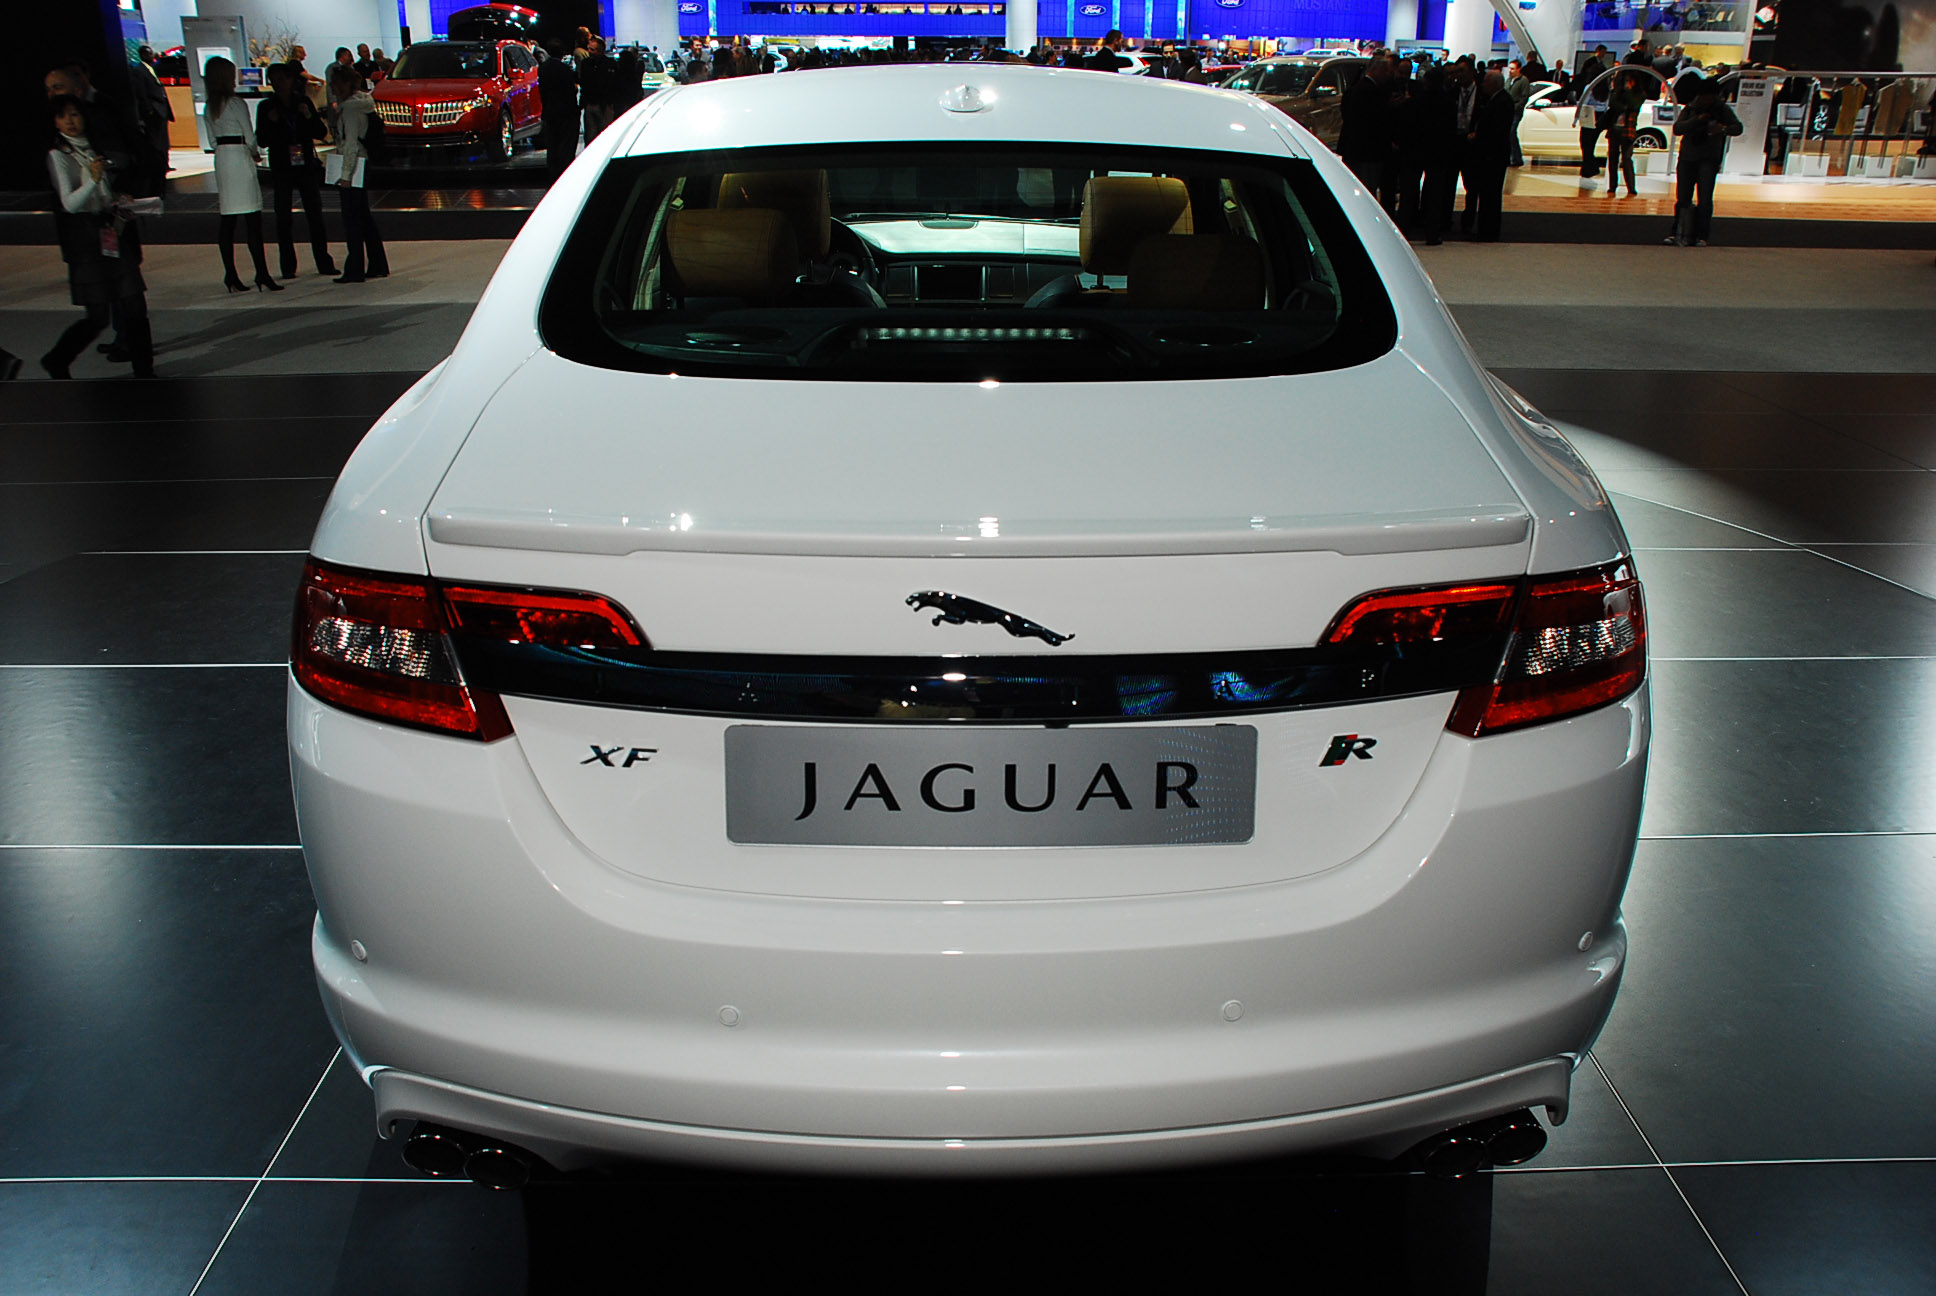 Jaguar XFR Detroit